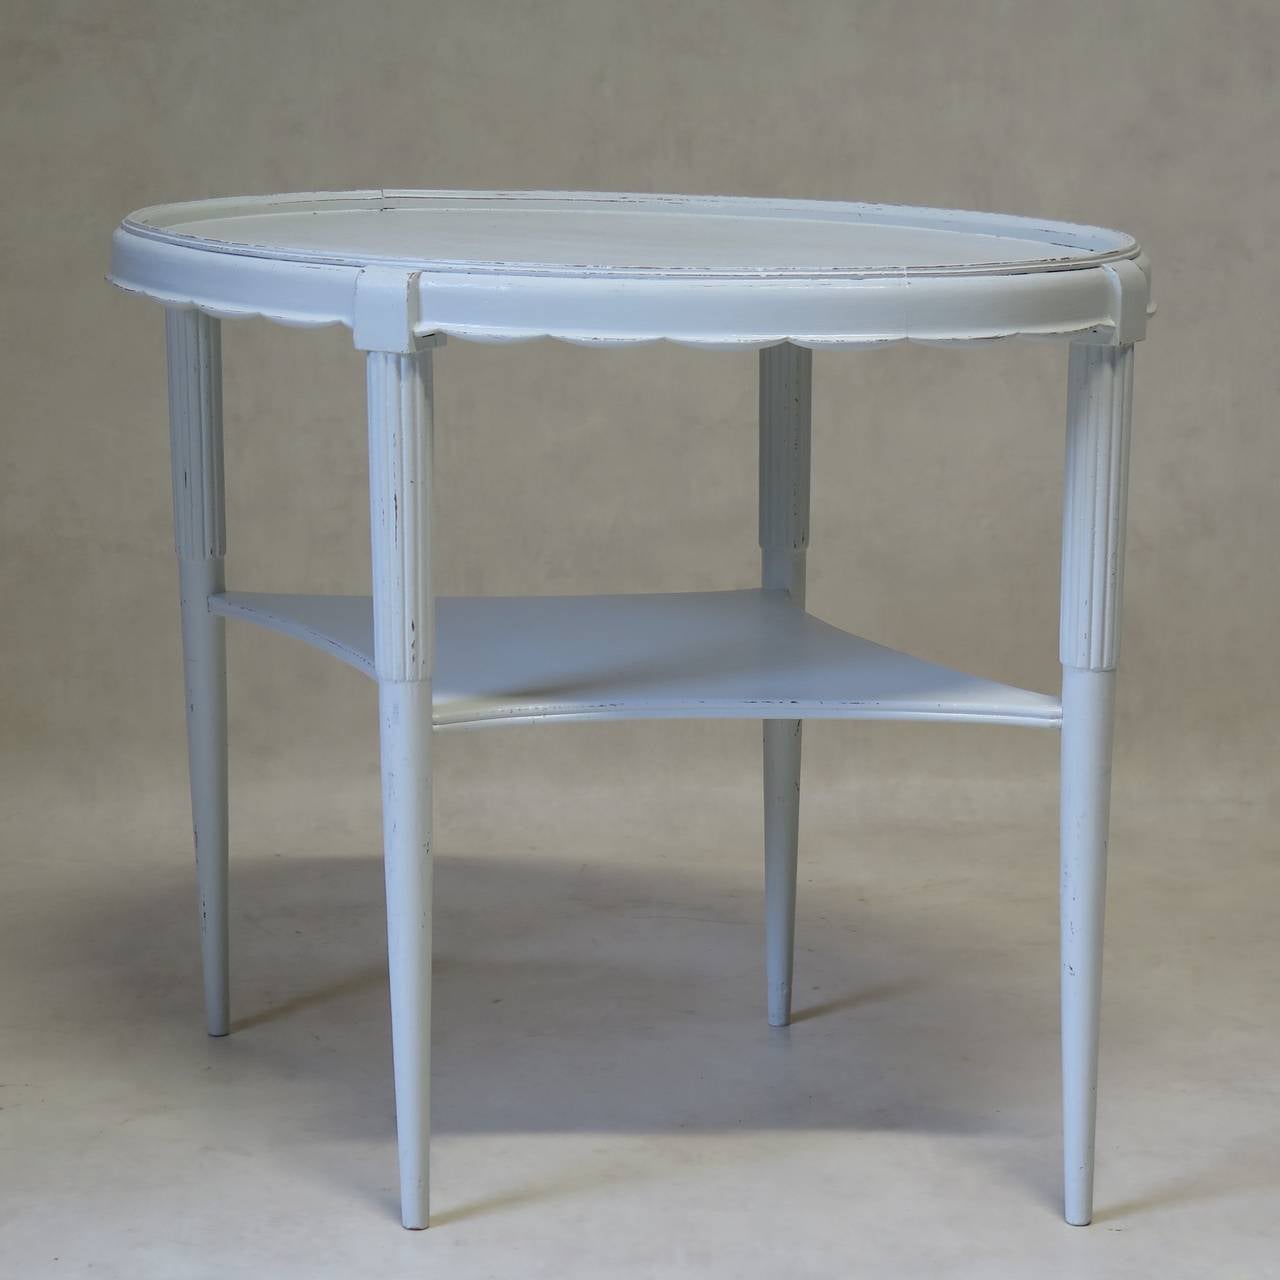 Élégante table d'appoint ovale avec un tablier festonné et des pieds anglés et effilés. Peint en blanc brillant.